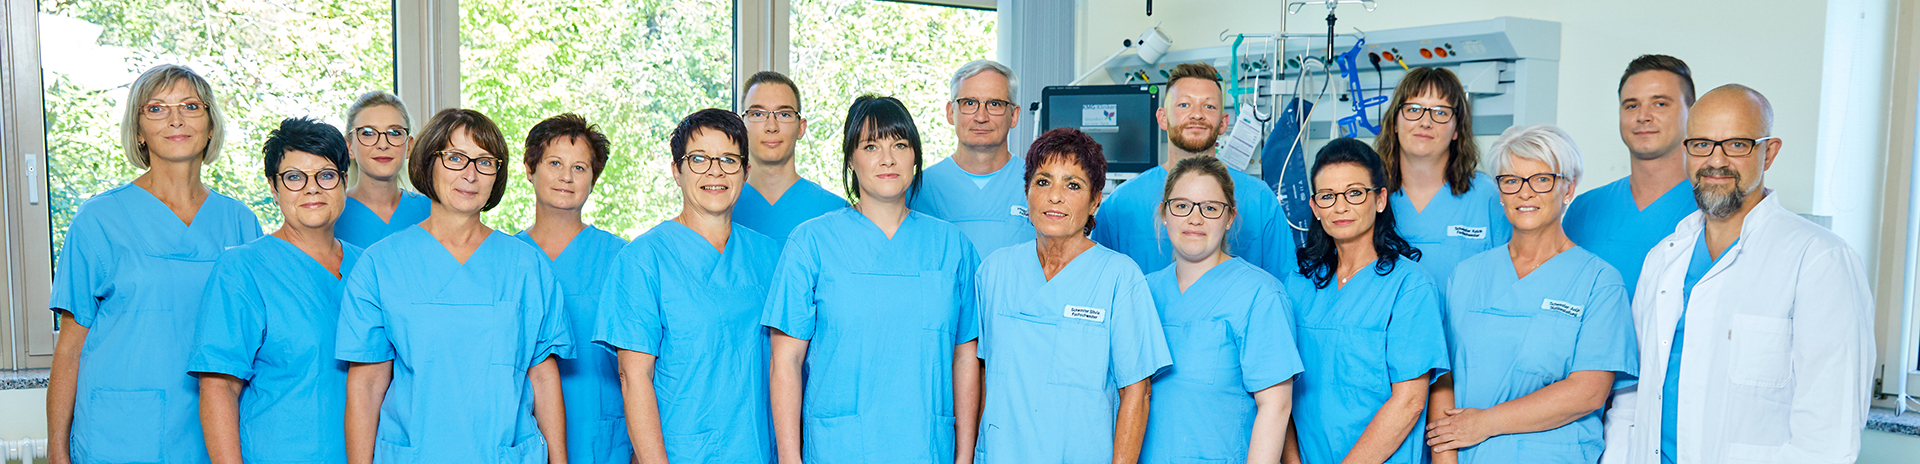 Anästhesiologie, Intensivmedizin & Schmerztherapie Teambild KMG Klinikum Sondershausen